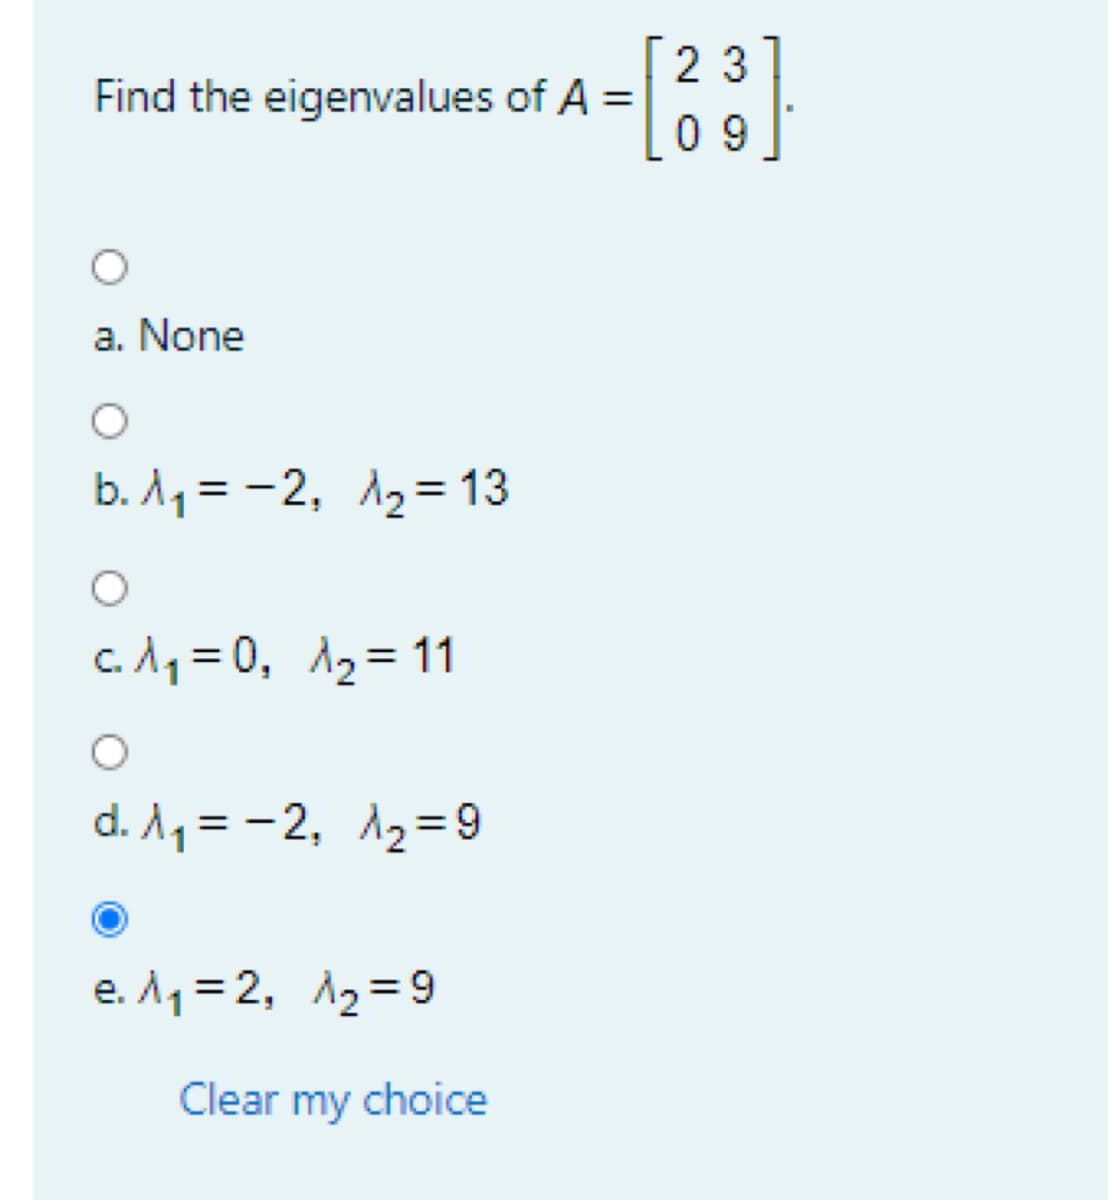 2 3
Find the eigenvalues of A =
0 9
a. None
b. A1 = -2, A2= 13
%3D
c. A1 = 0, A2= 11
%3D
d. A1 = -2, 12=9
e. A1= 2, A2=9
Clear my choice
